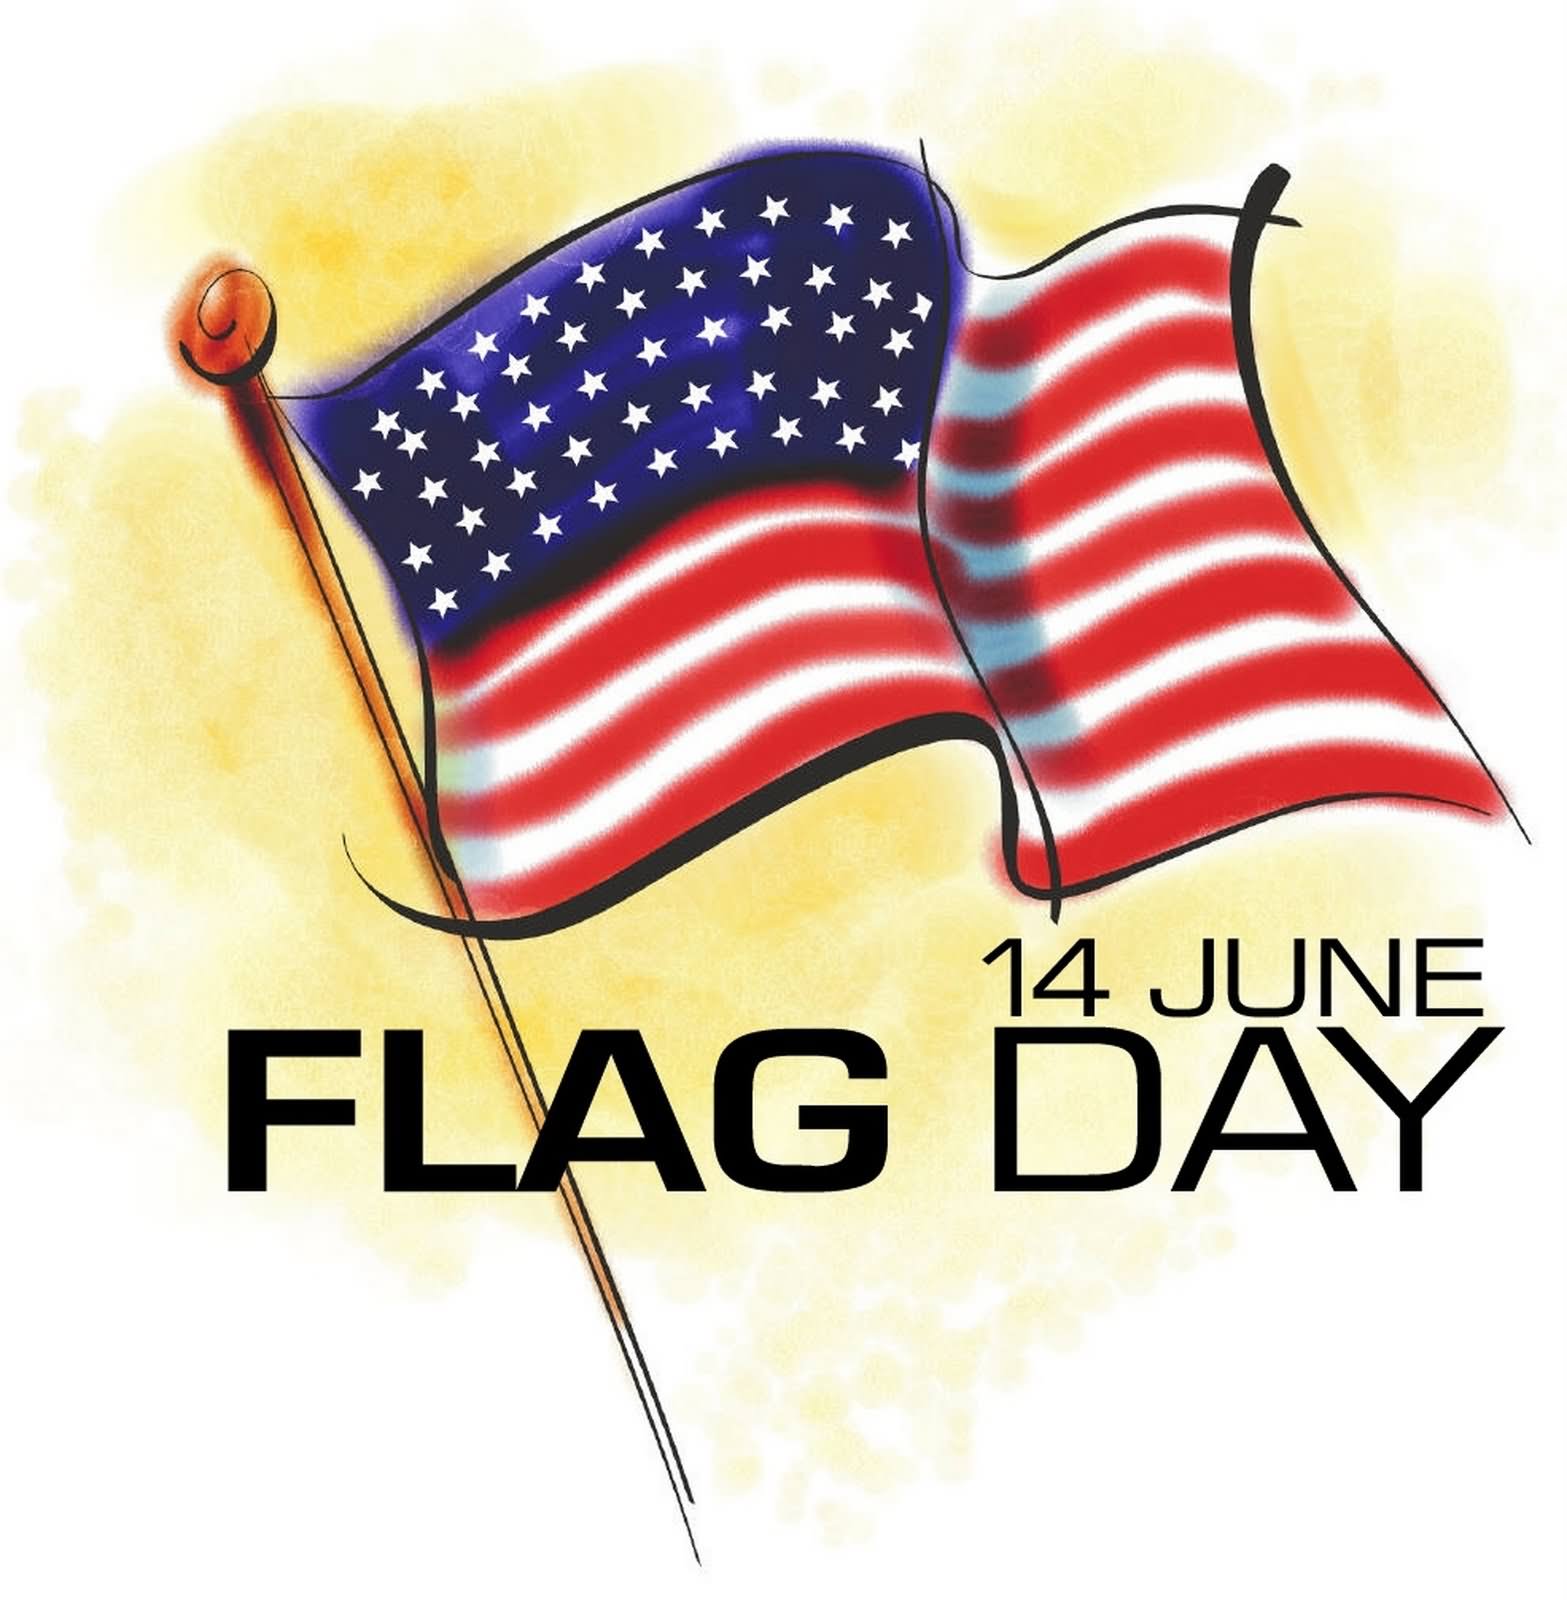 ... Flag Day stamp - Flag Day